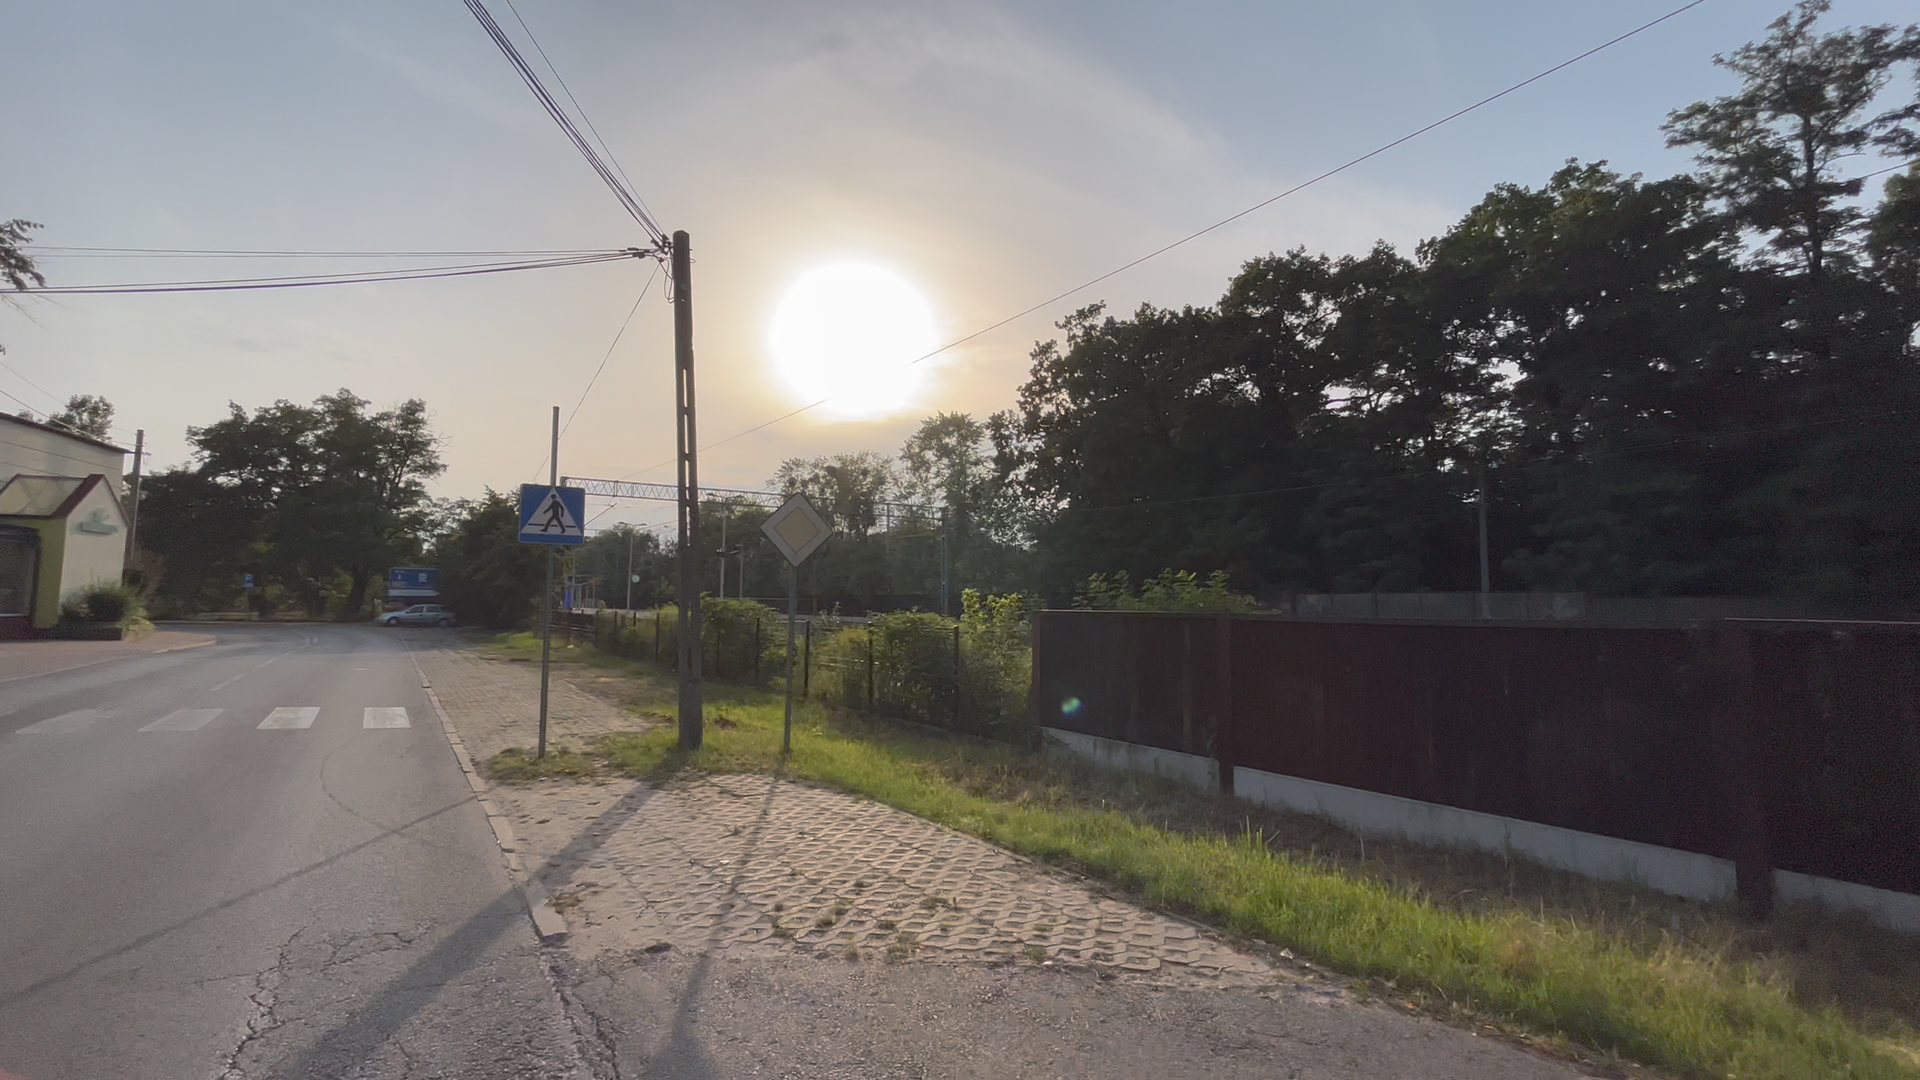 ul. Warszawska i pas zieleni, widoczne ogrodzenie torów kolejowych, na drugim planie zachodzące słońce